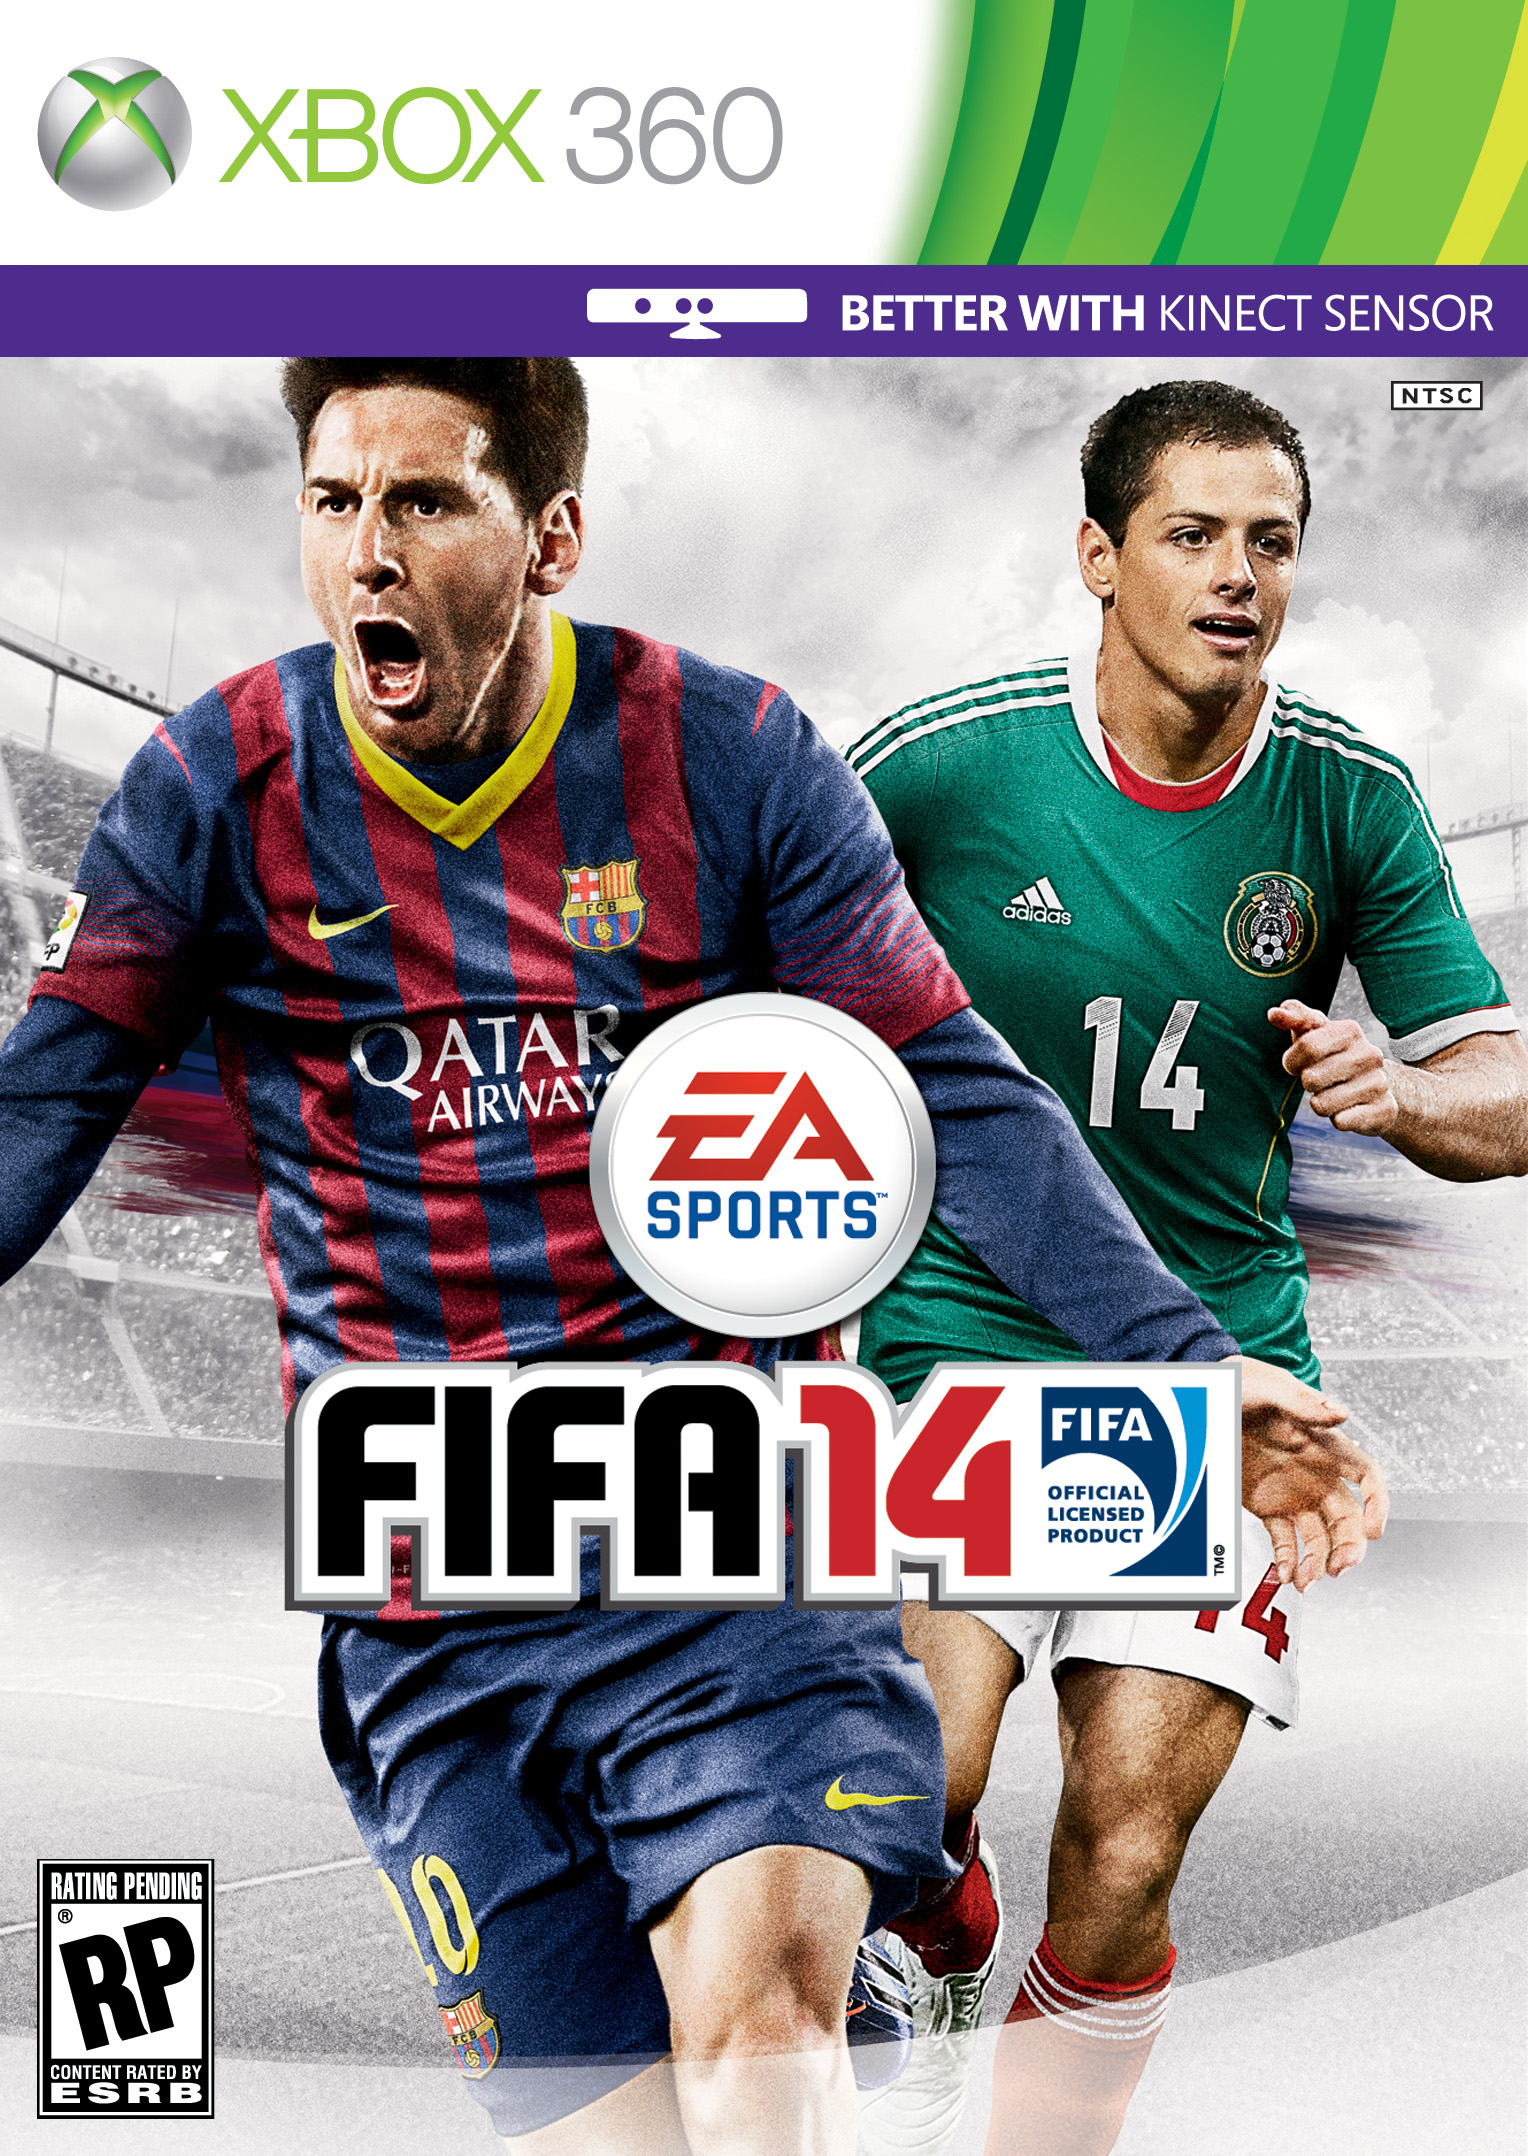 Na krabičce FIFA 14 bude hvězda Messi 84129